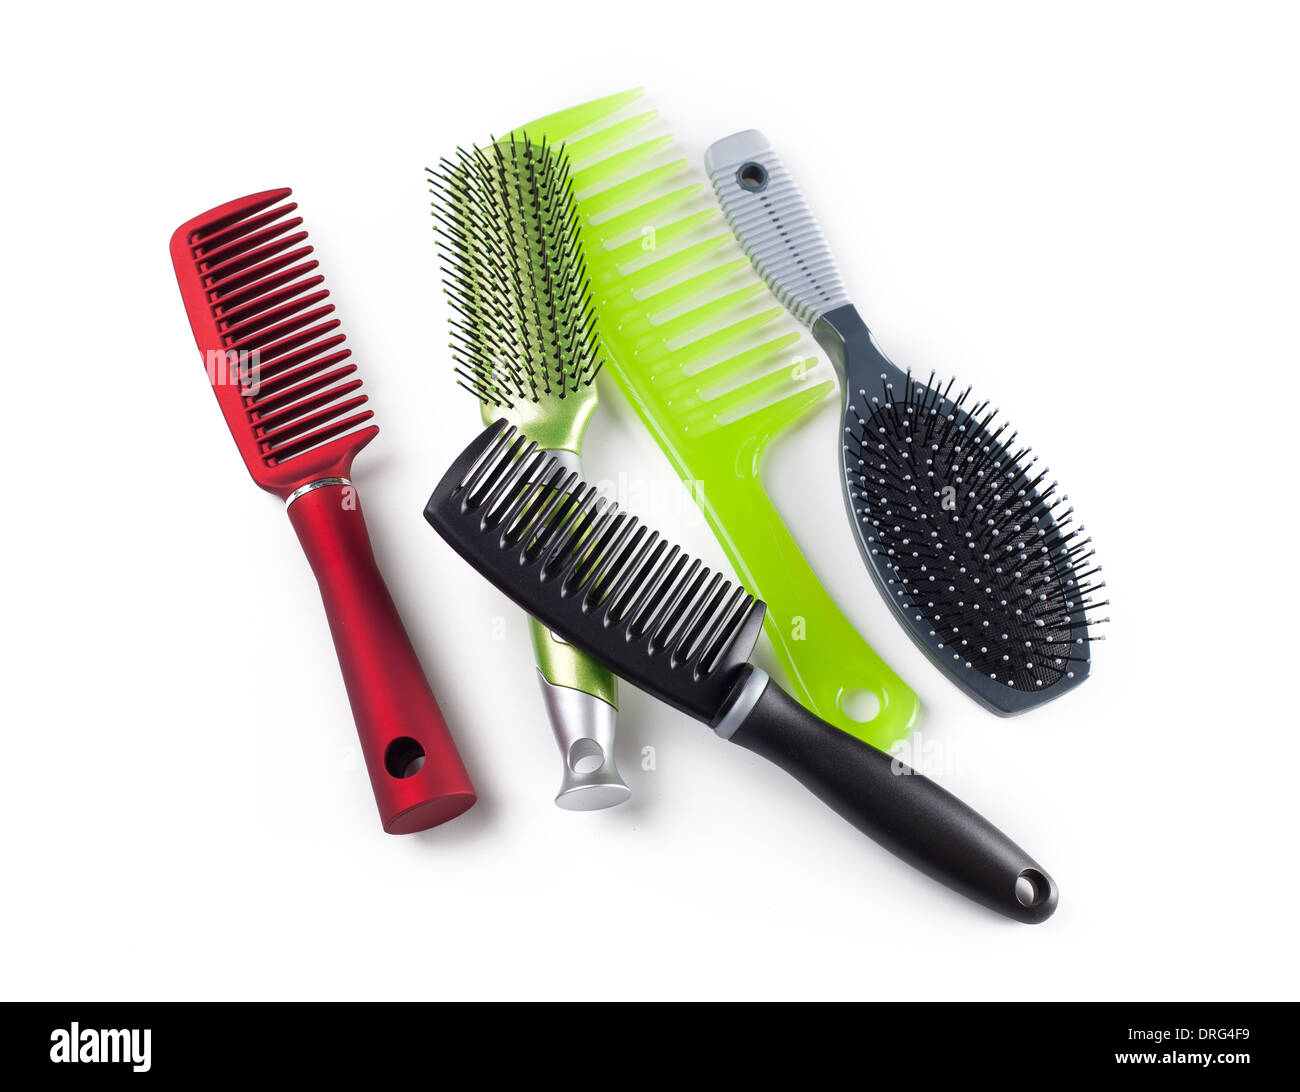 Pettini e spazzole per capelli isolati su sfondo bianco Foto Stock